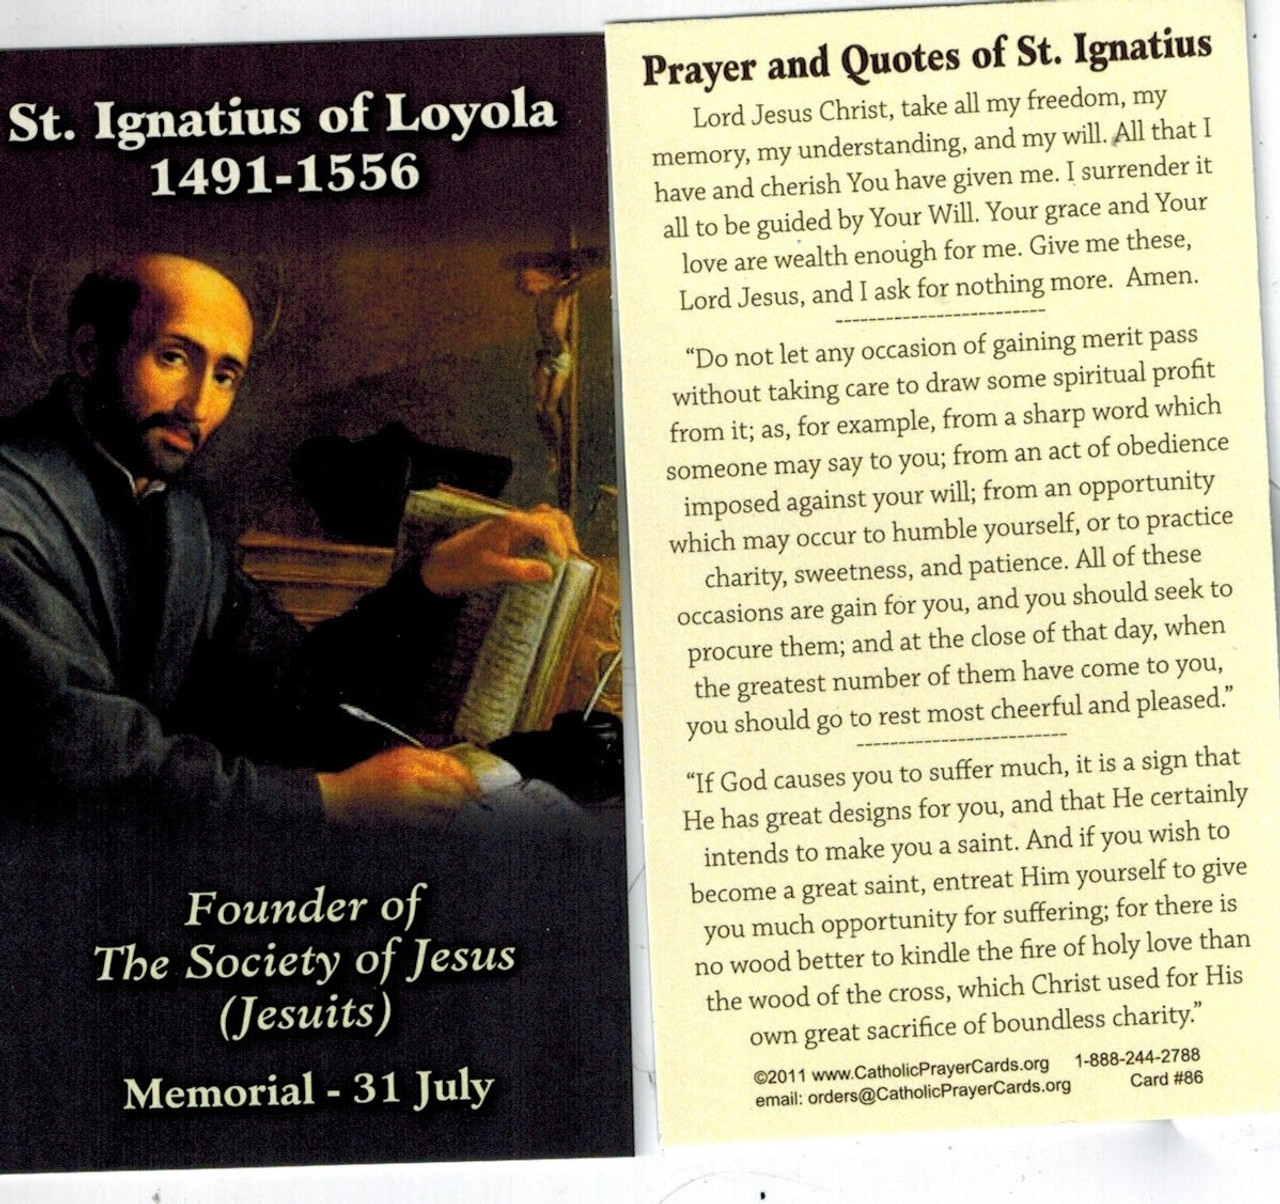 Prayer and Quotes of Saint Ignatius of Loyola